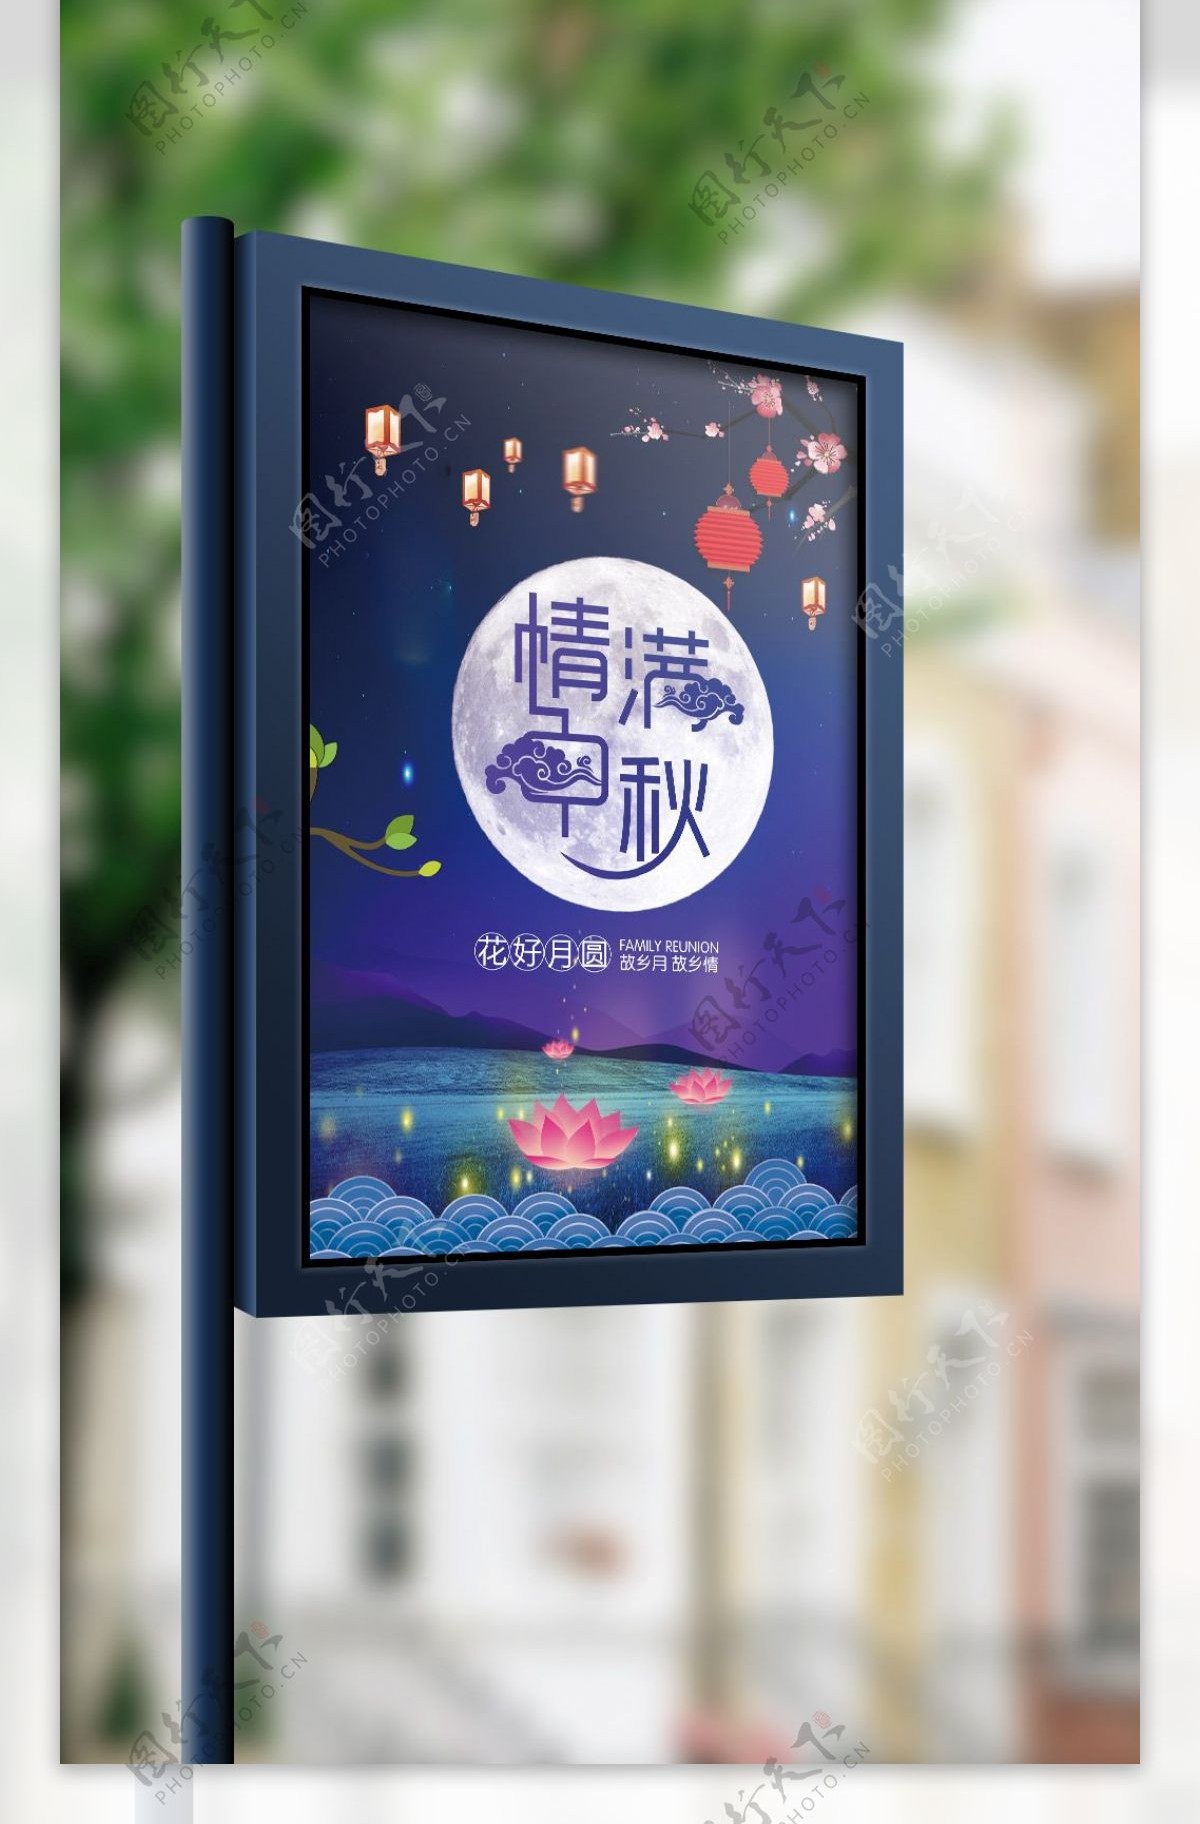 蓝色卡通中国风夜空月饼中秋节节日商用海报